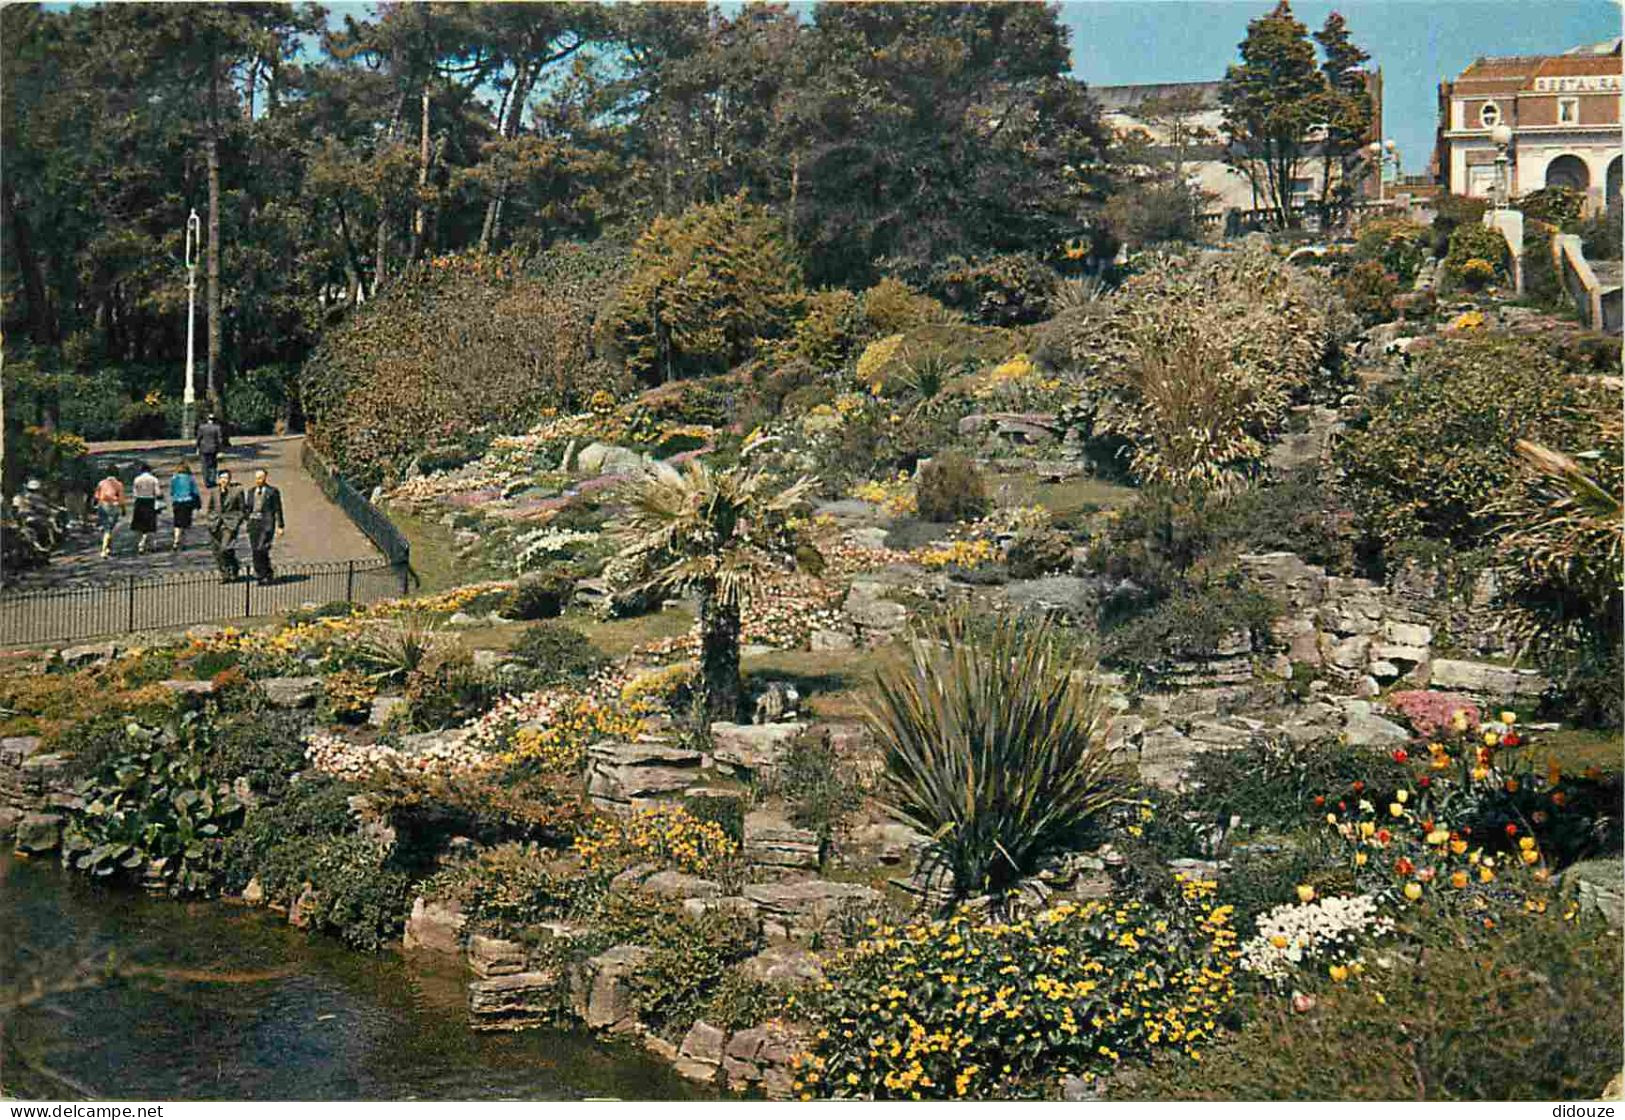 Angleterre - Bournemouth - Lower Gardens - Rock Garden - Jardins - Hampshire - England - Royaume Uni - UK - United Kingd - Bournemouth (hasta 1972)